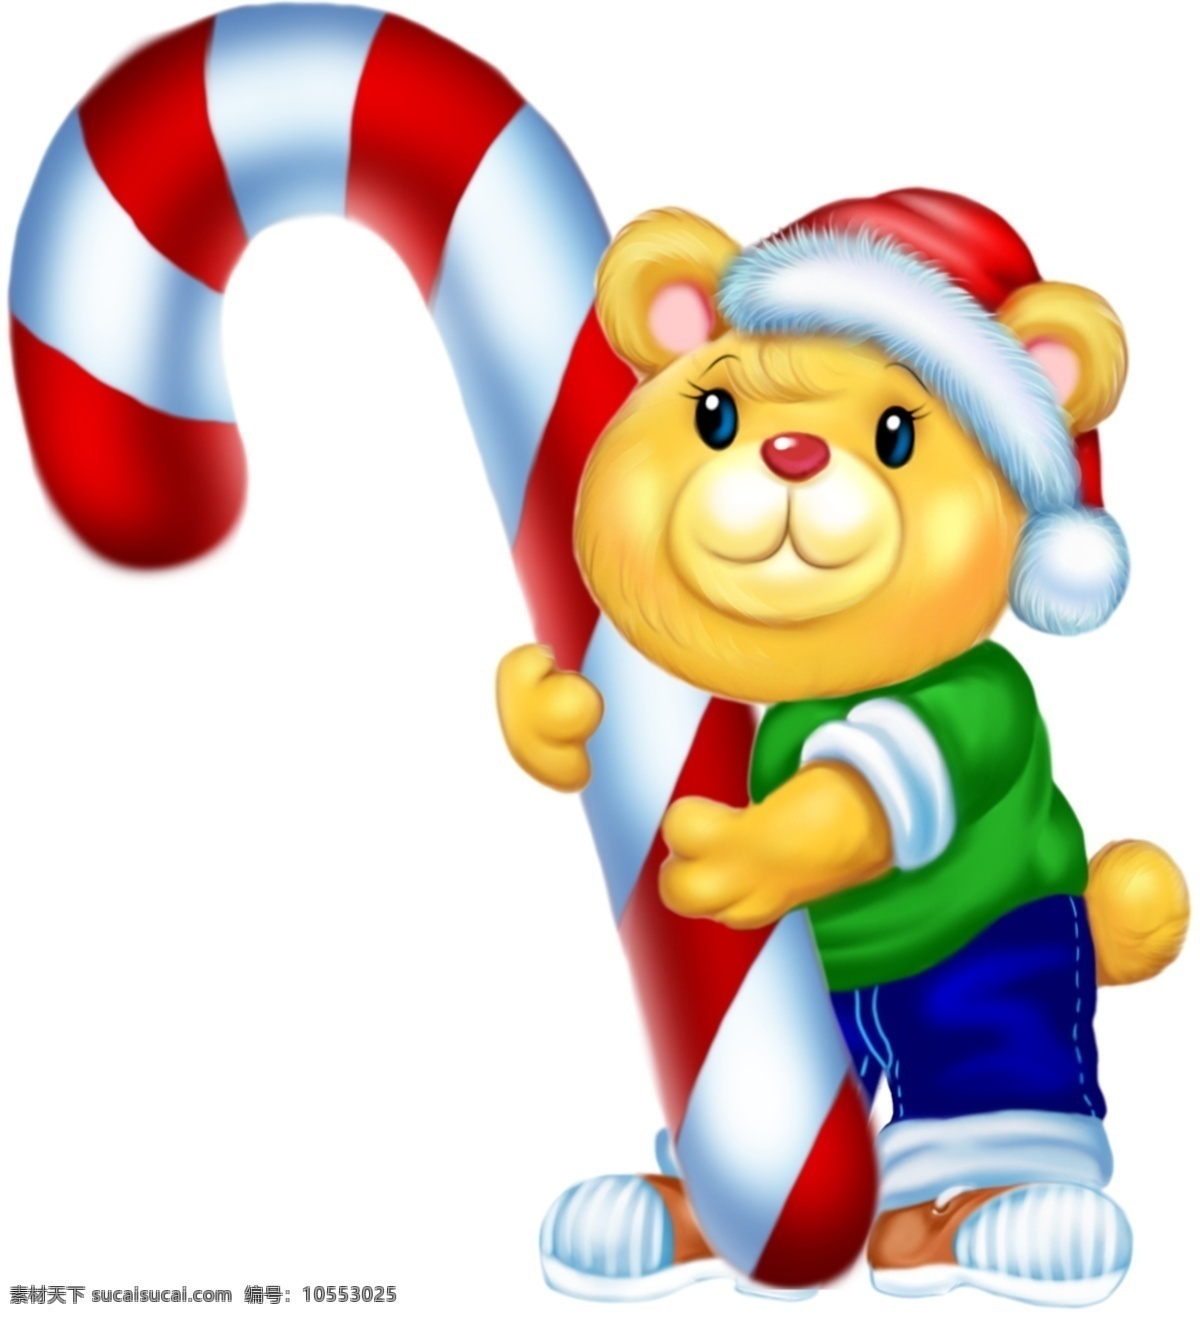 圣诞 熊 可爱 节日 动物 圣诞熊 节日素材 其他节日